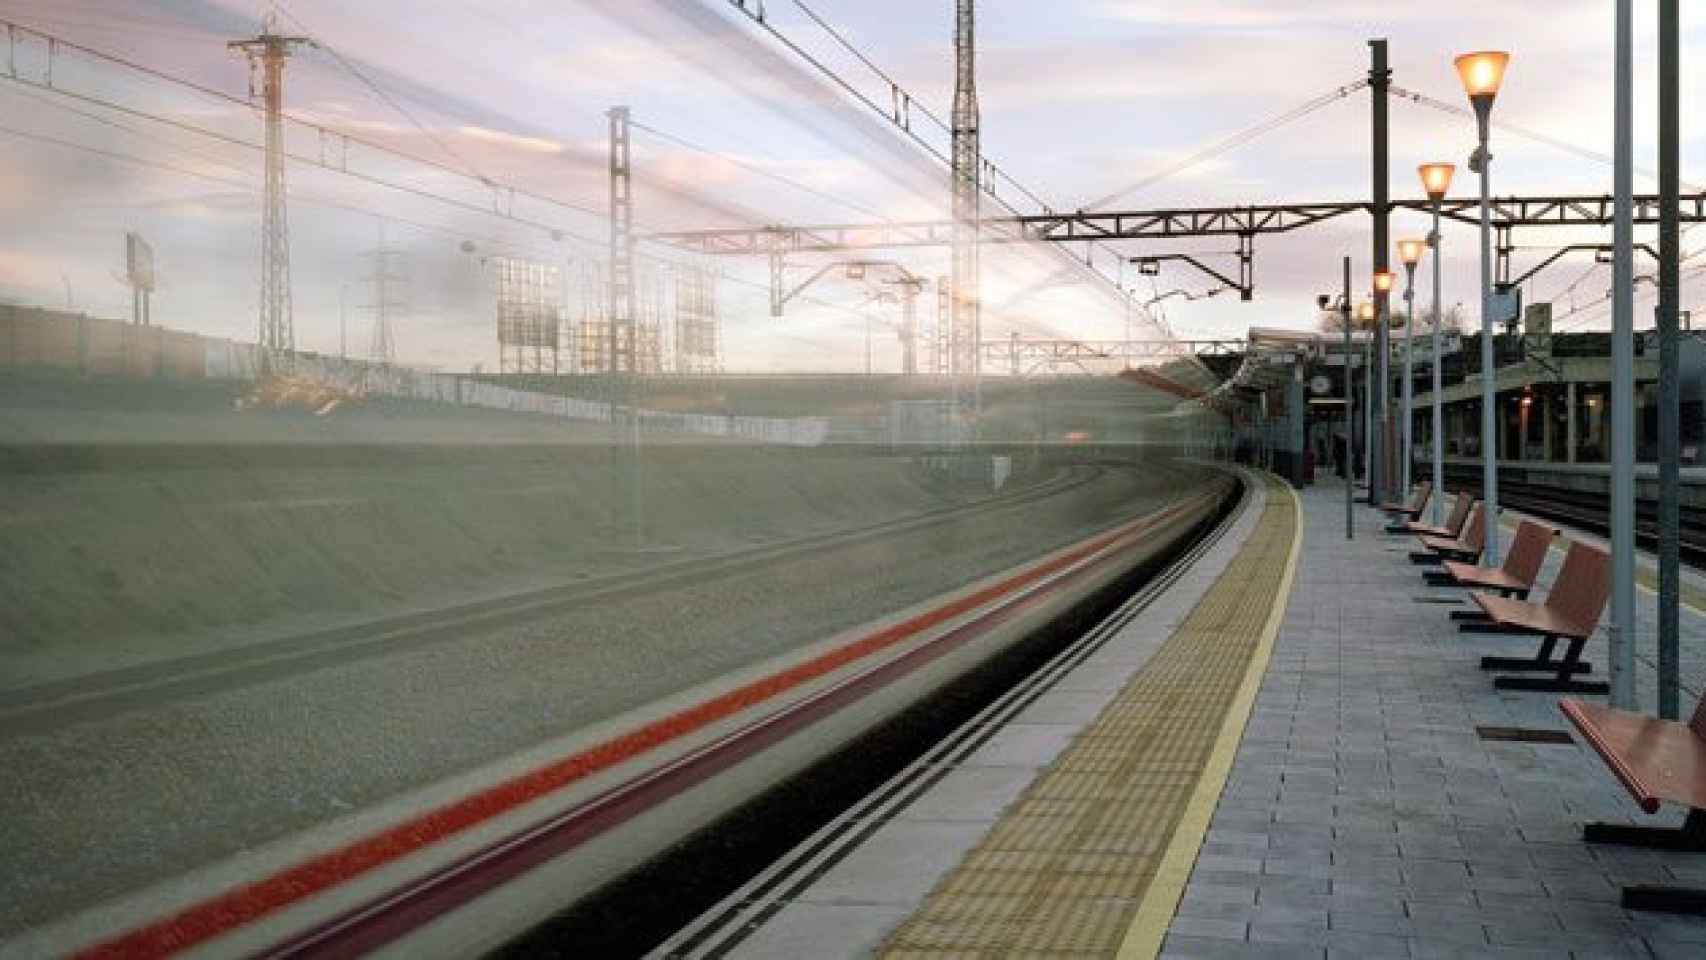 Estación de Santa Eugenia de Cercanías de Madrid, que fue atacada el 11 de marzo de 2004 / CG